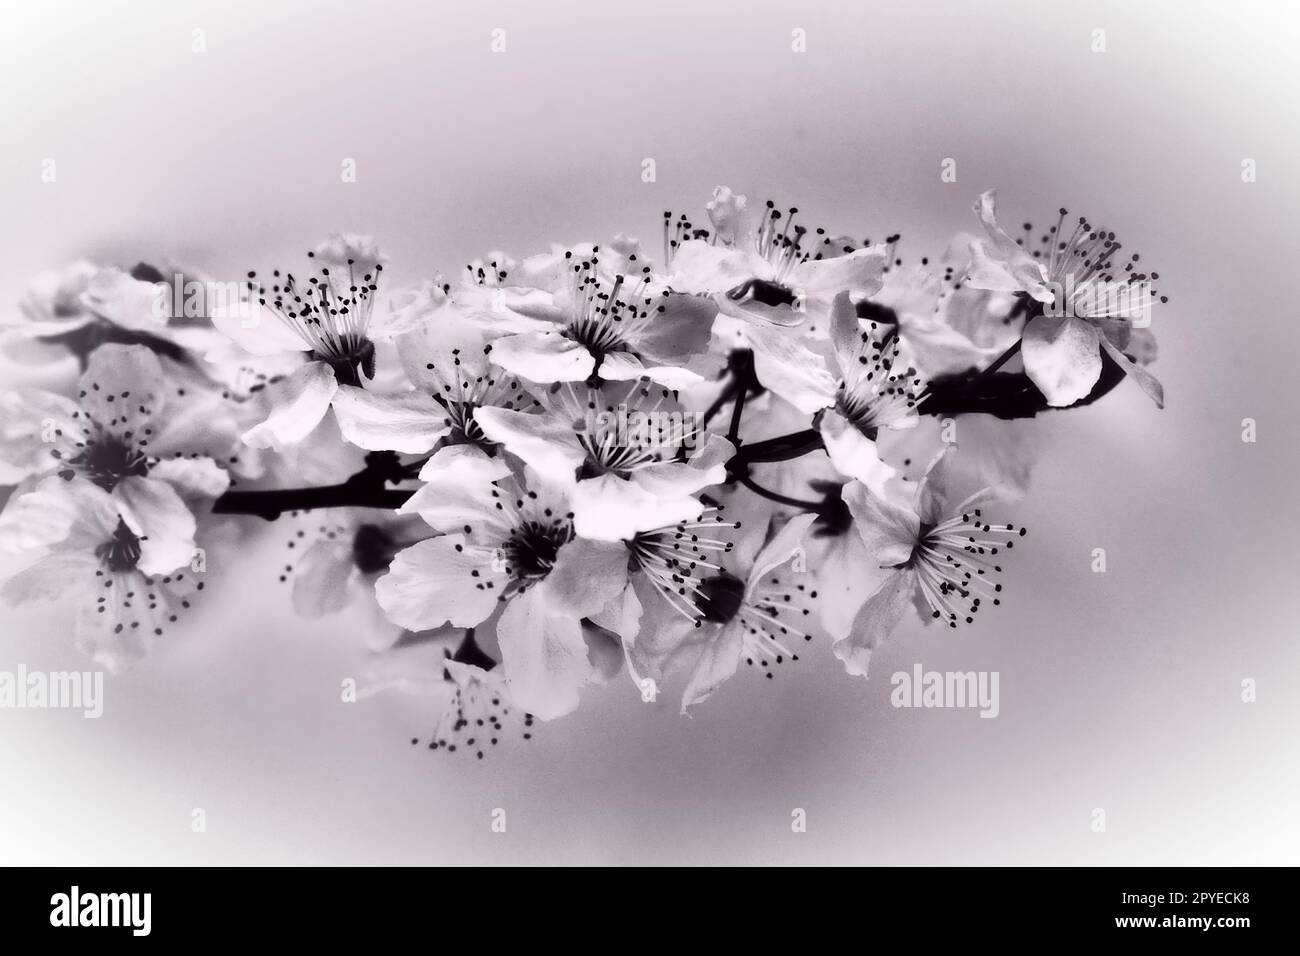 Vogelkirsche, Kirsche oder süße Kirschblüten auf weißem Hintergrund. Frühlingsblumen auf einem weißen Blatt Papier. Ein Ast mit vielen Blumen. Schwarzweißfoto mit weißer Vignette Stockfoto